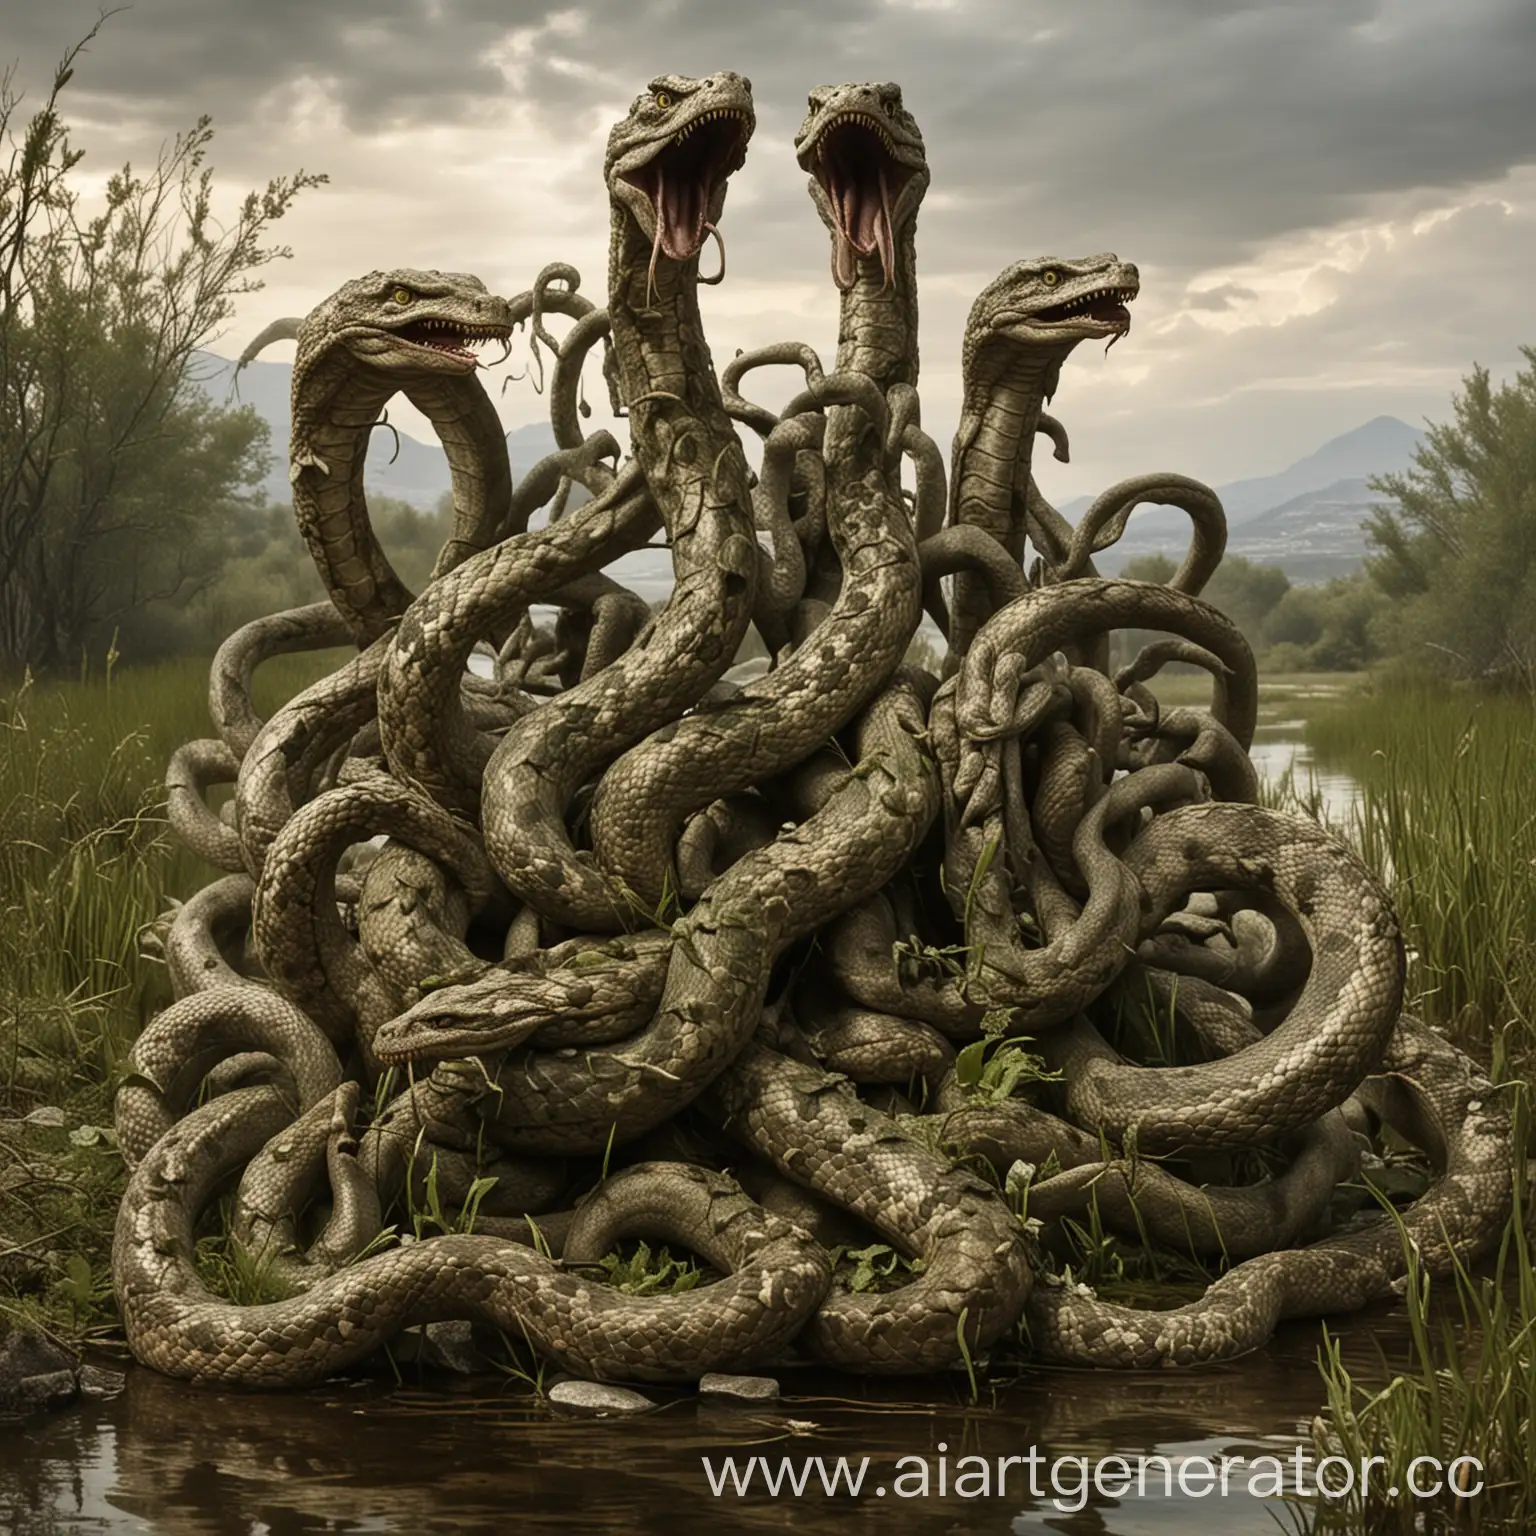 Лернейская гидра — многоголовое существо, похожее на змею, обитающее в болотах Греции.